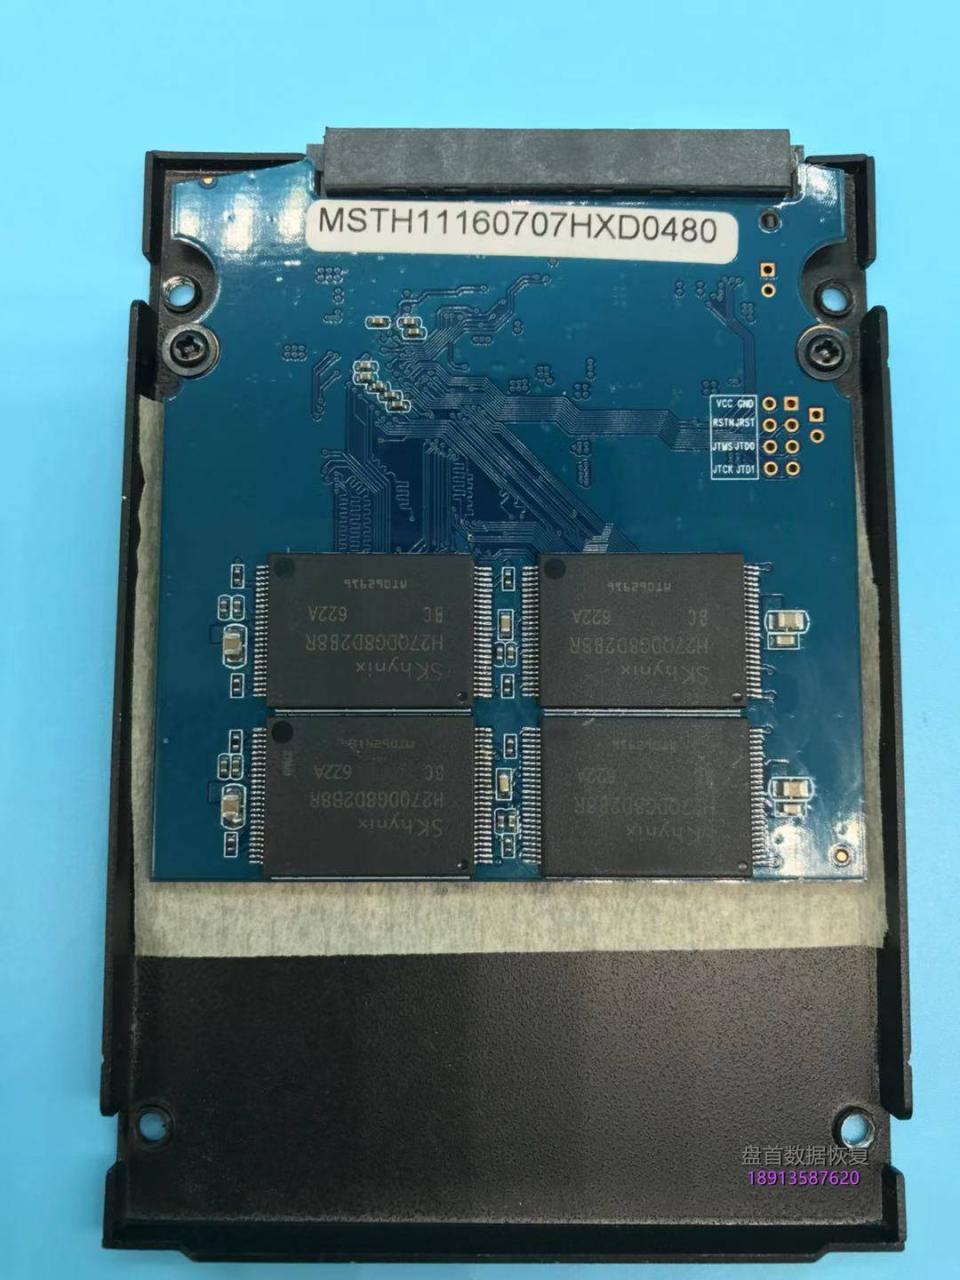 SM2246XT主控德乐120G固态硬盘掉盘无法识别不读盘数据恢复成功